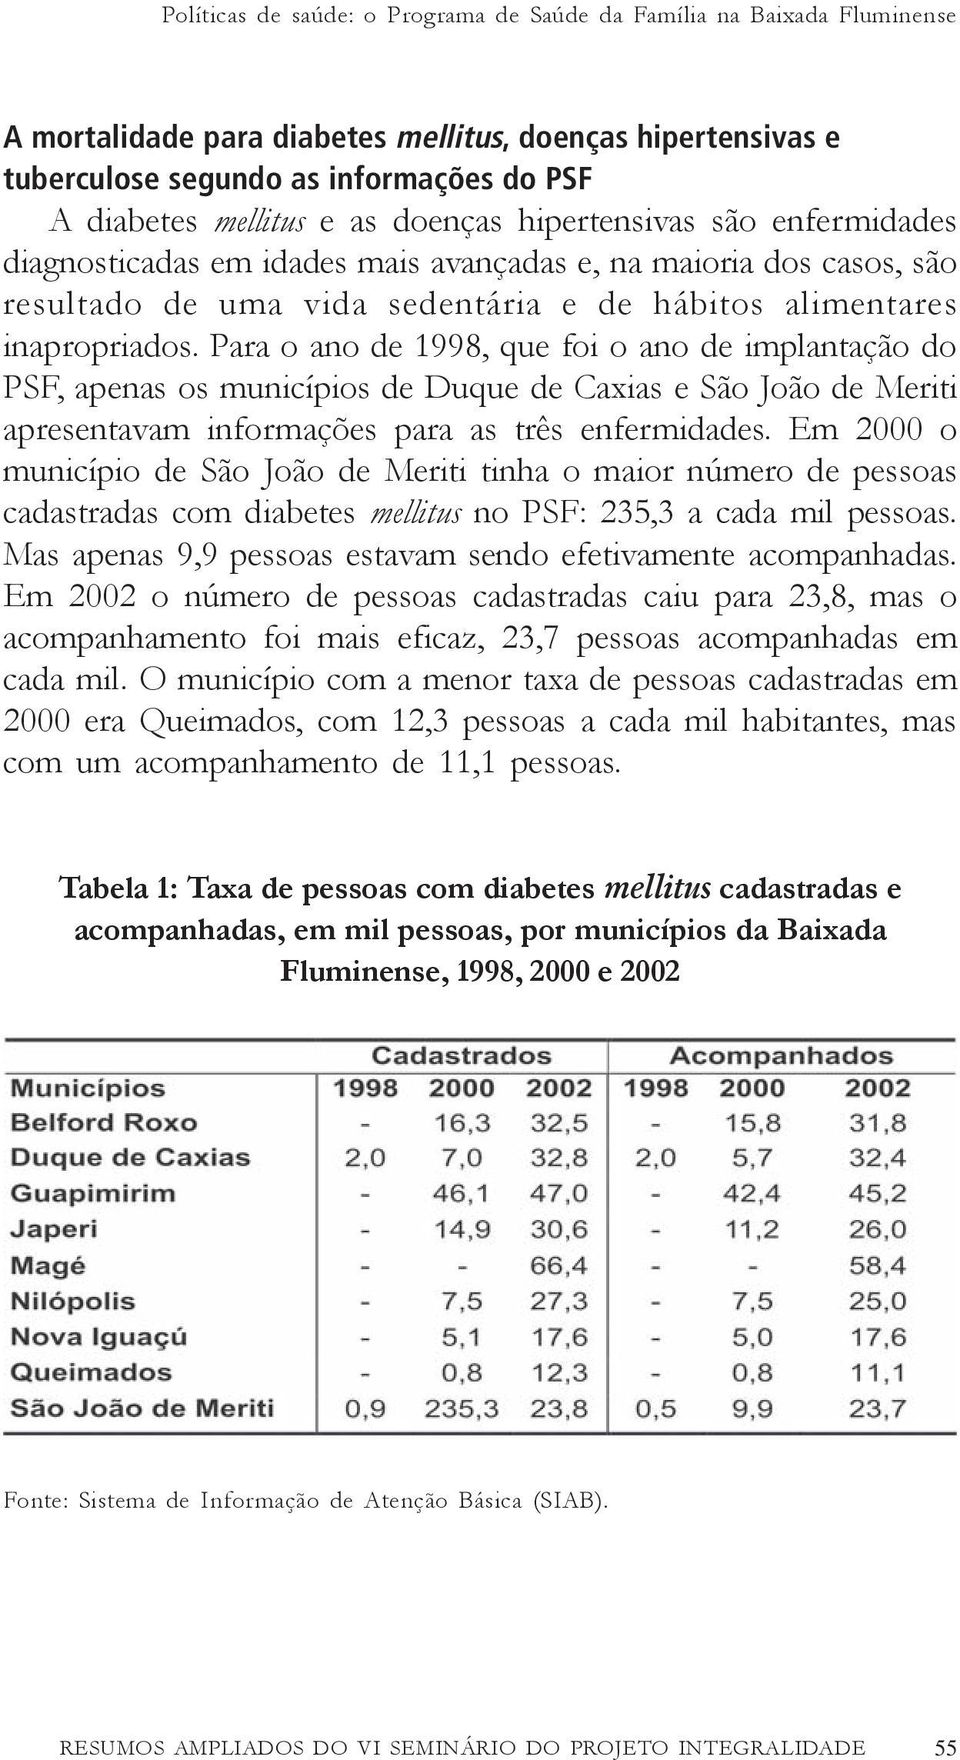 Para o ano de 1998, que foi o ano de implantação do PSF, apenas os municípios de Duque de Caxias e São João de Meriti apresentavam informações para as três enfermidades.